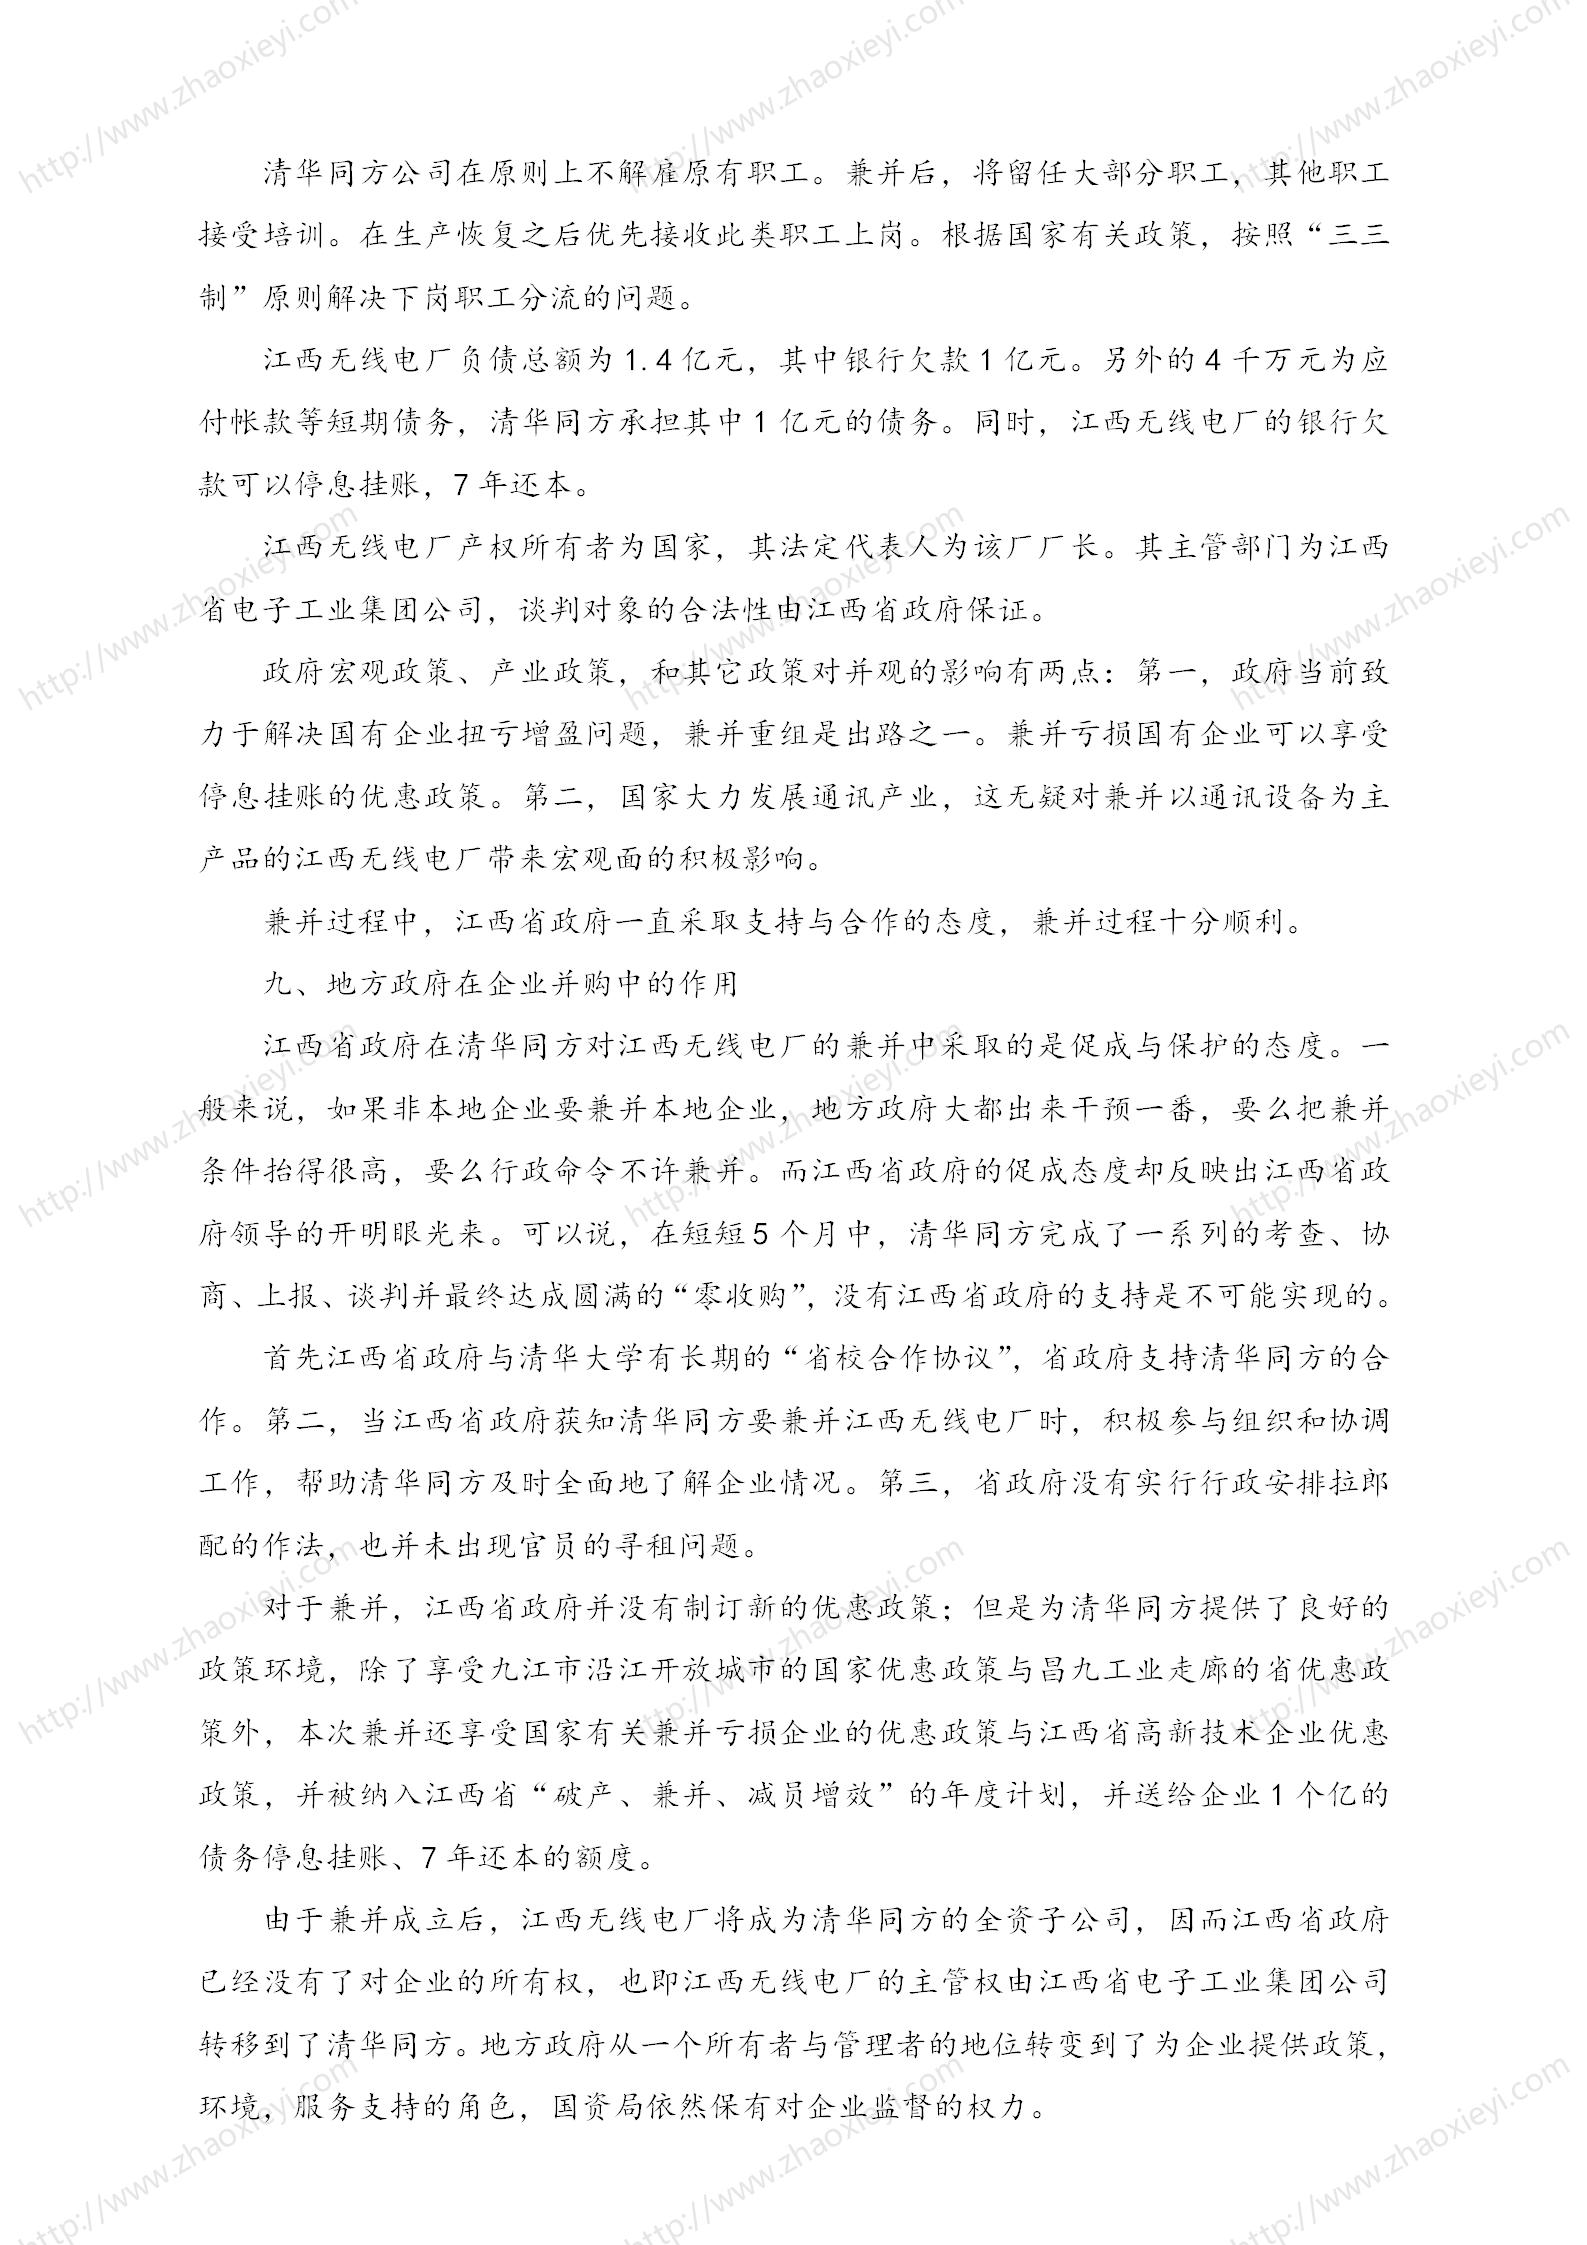 中国企业并购经典案例_102.jpg